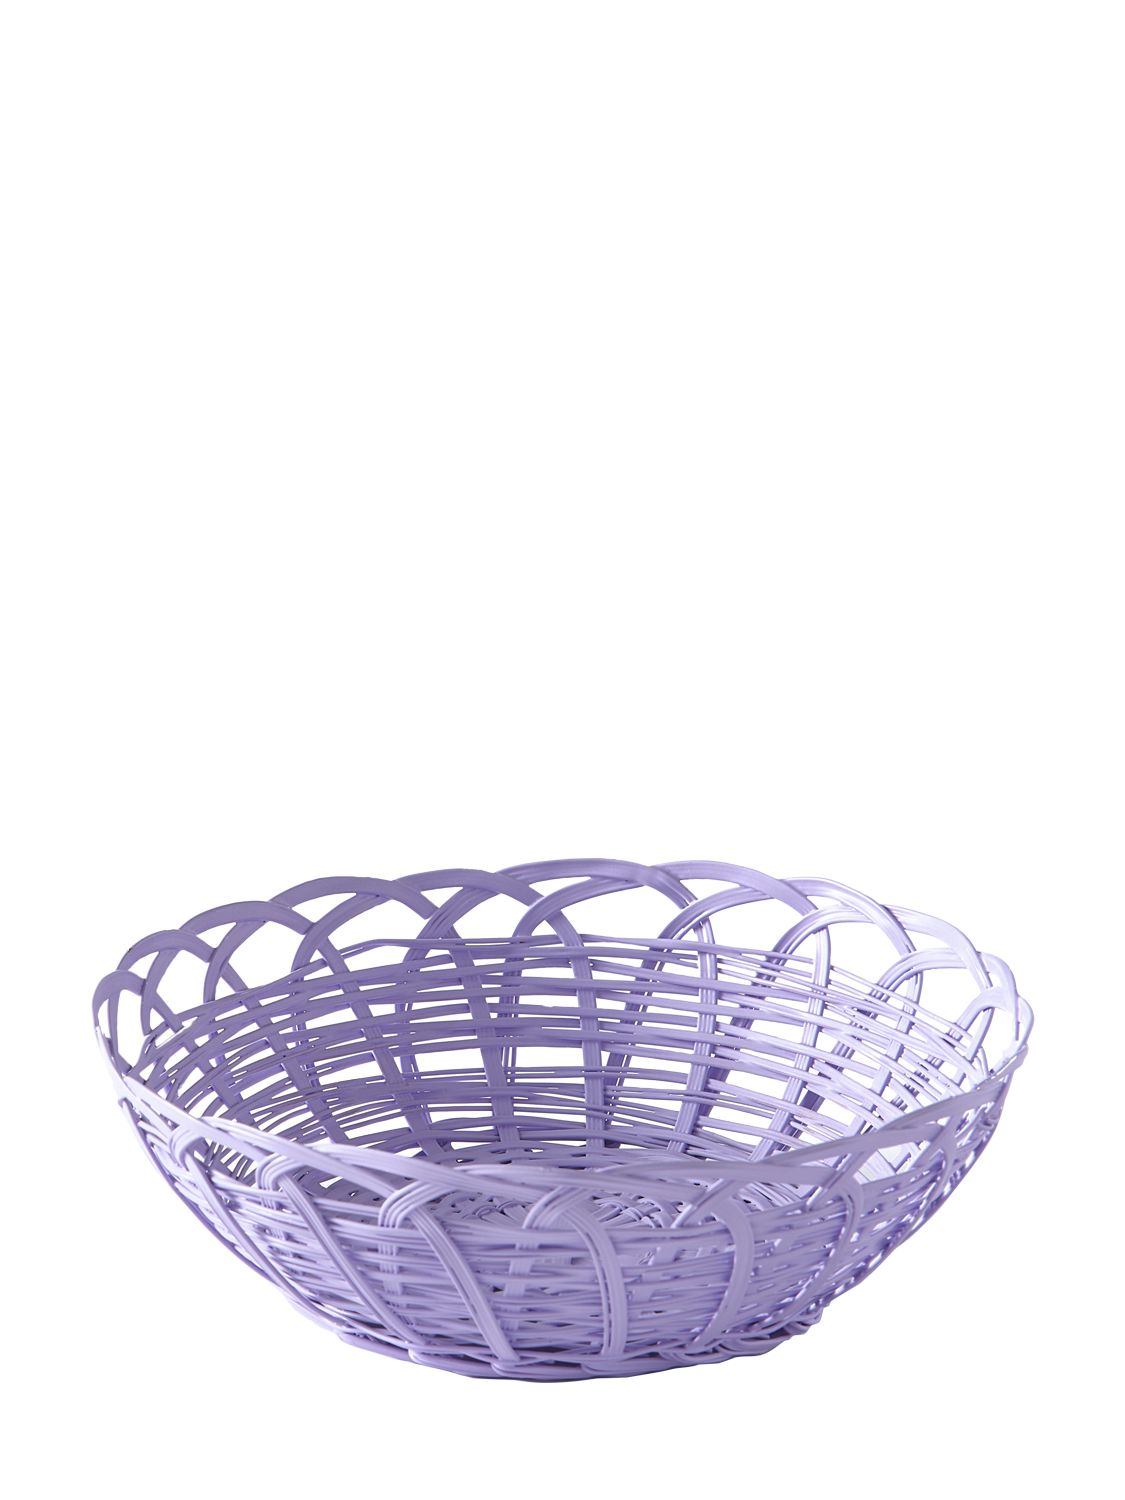 Polspotten Bakkie Round Iron Basket In 丁香紫